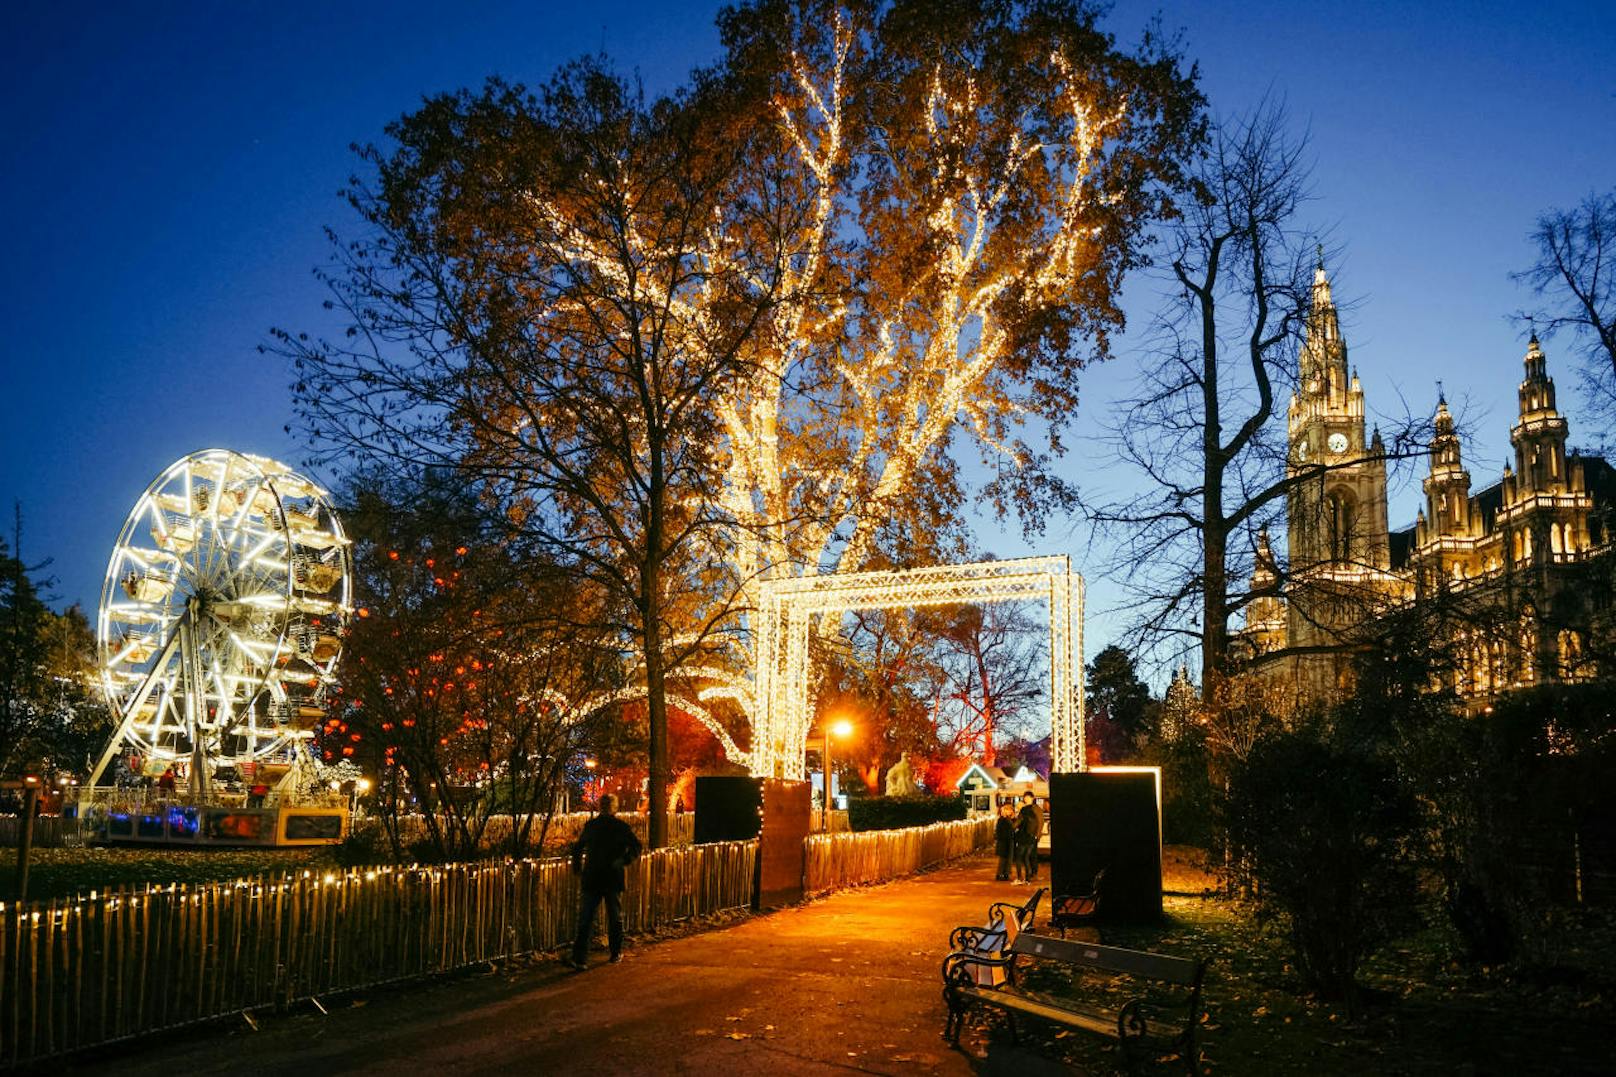 In der nördlichen Parkhälfte bietet die Weihnachtswelt im Rathauspark den Rathausexpress, ein Riesenrad und ein historisches Ringelspiel.